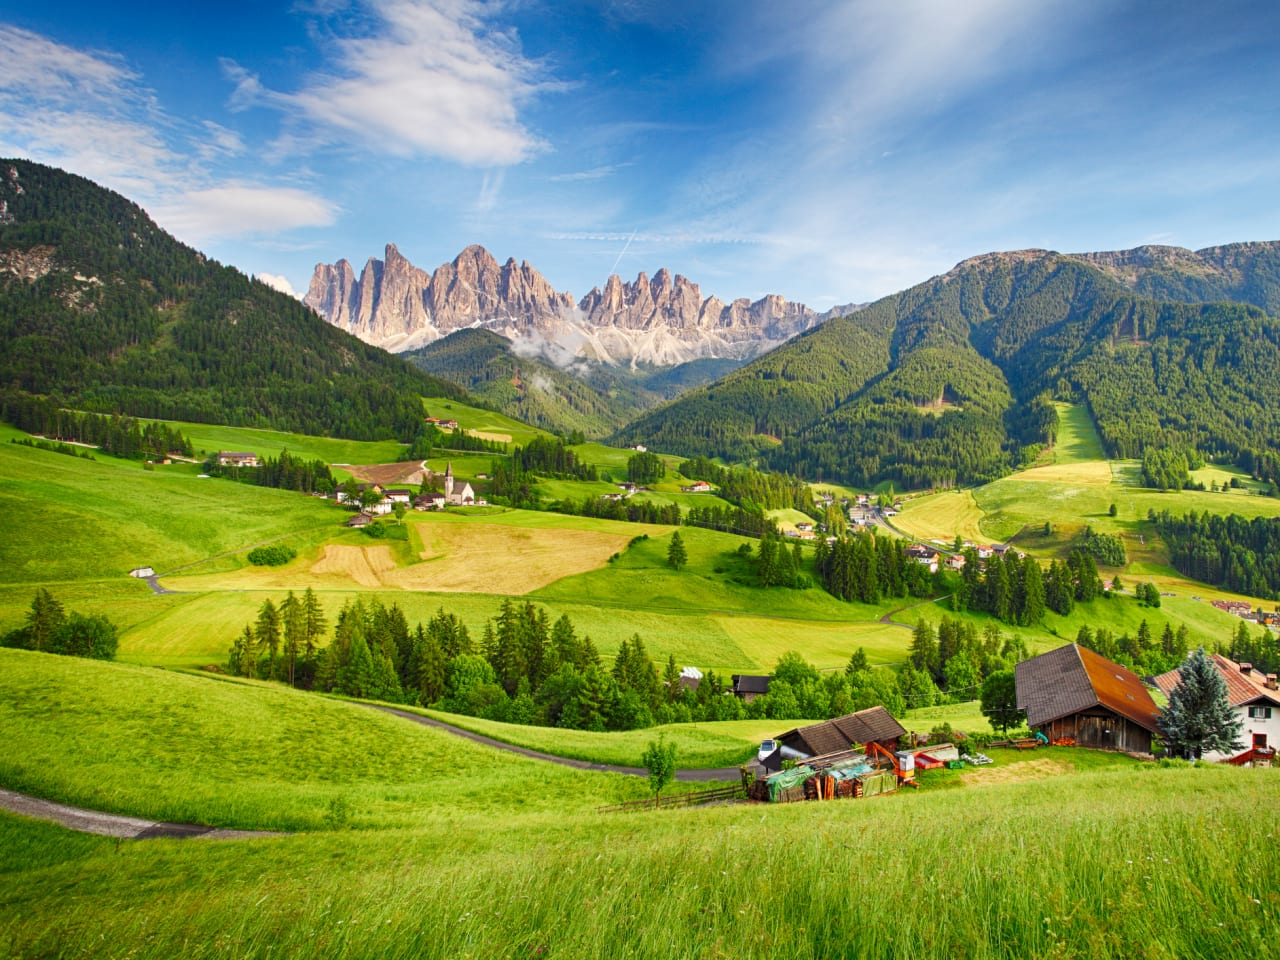 SchönesmBergpanorama mit den Dolomiten im Hintergrund und Hütten in grünem Tal © iStock.com/TomasSereda